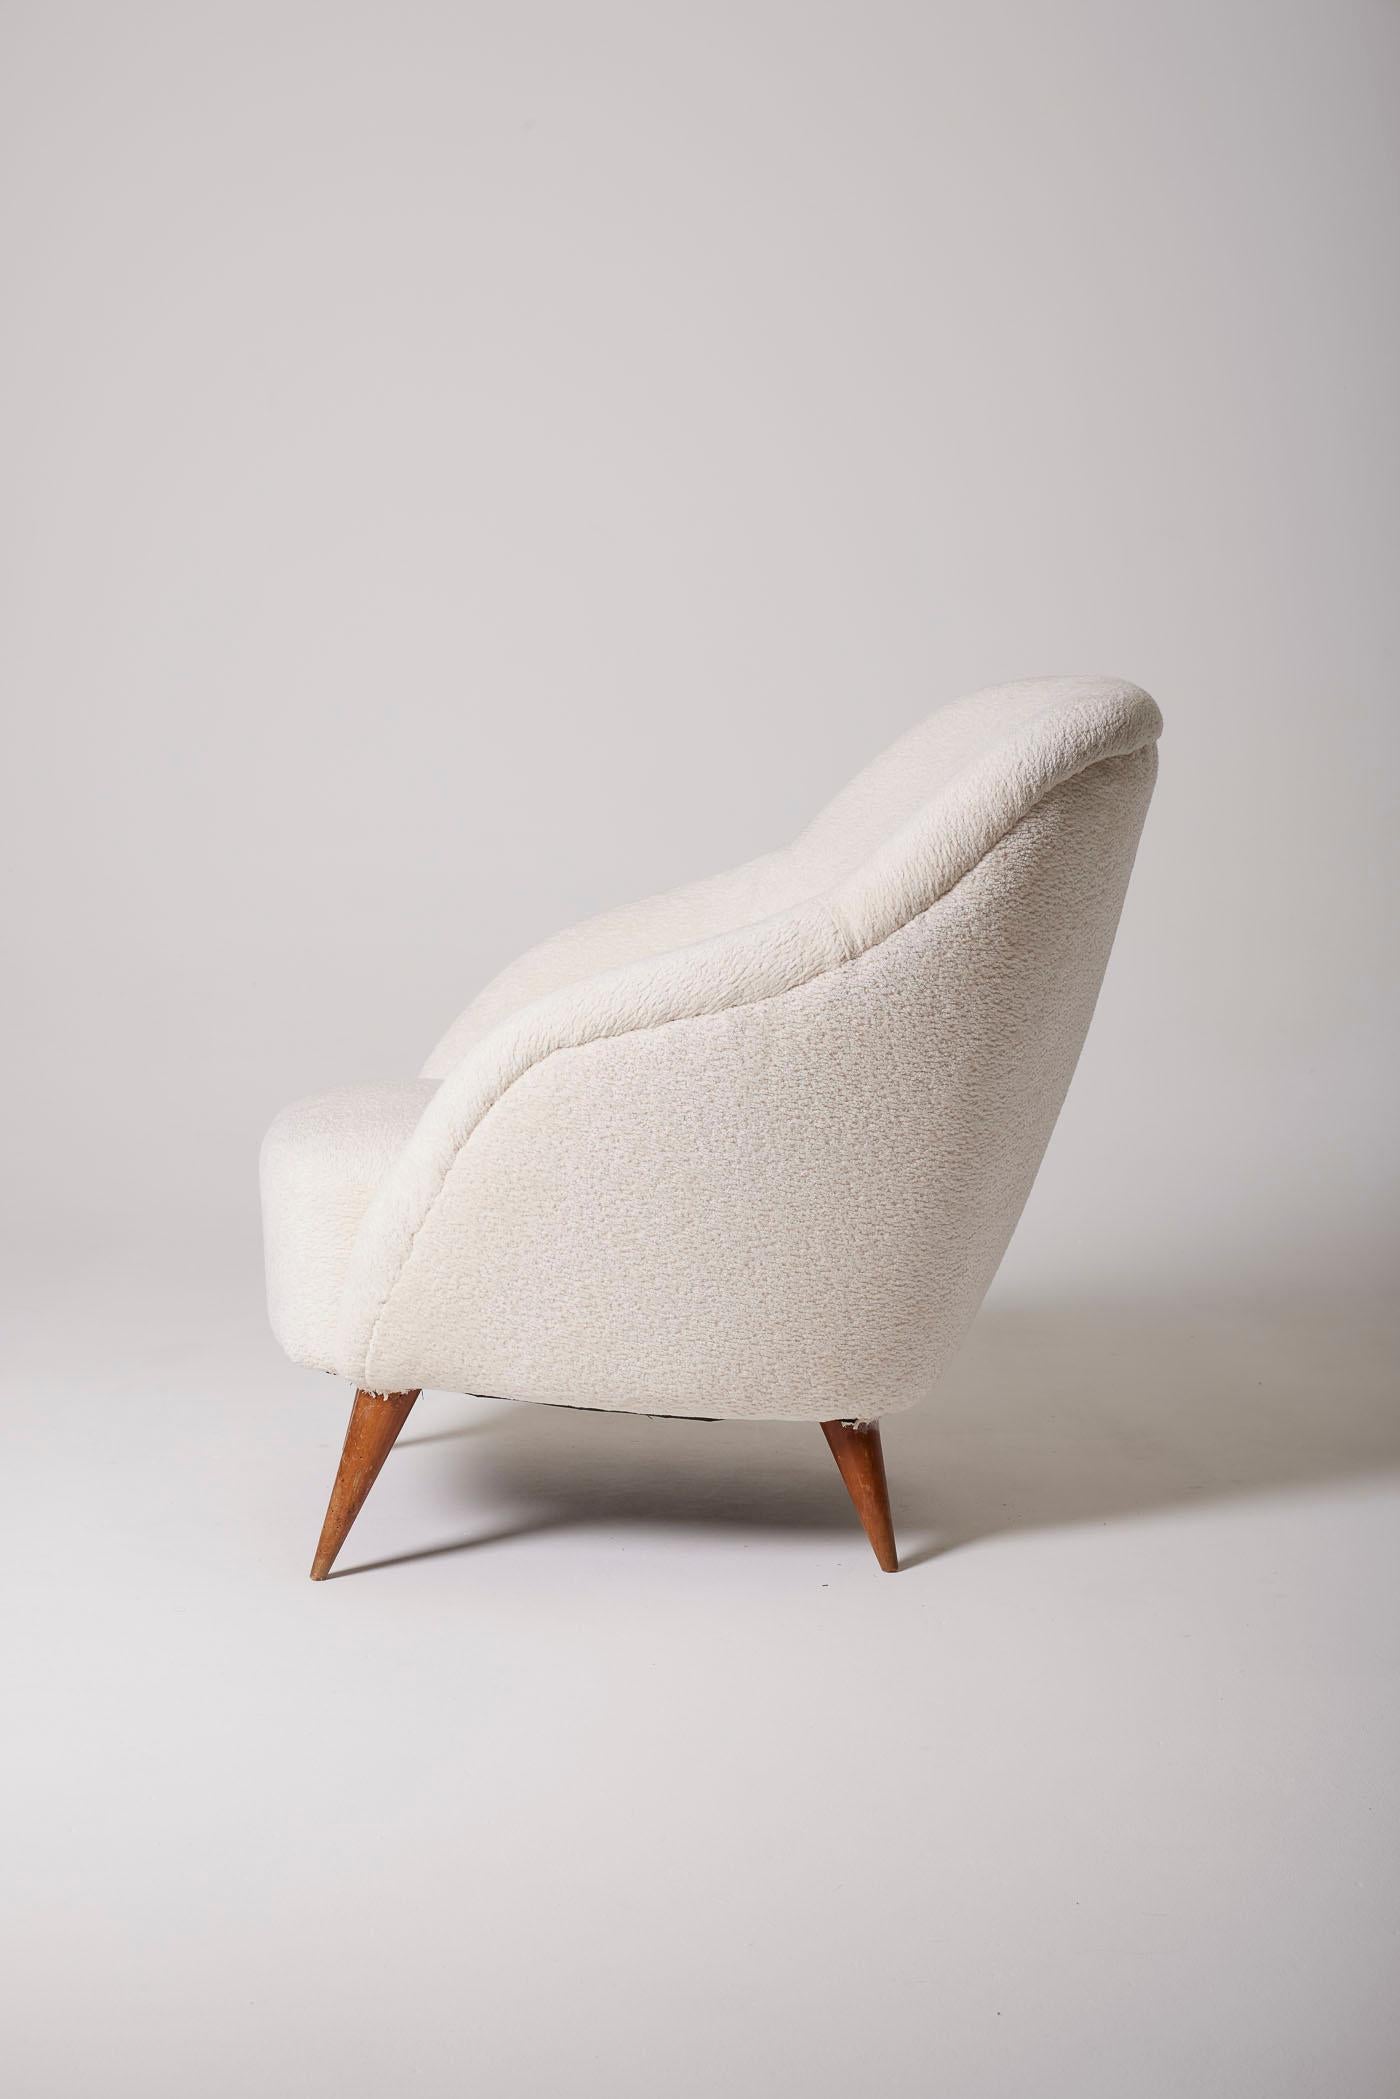 Fauteuil italien des années 1950 inspiré par le designer Gio Ponti. Ce fauteuil a été retapissé avec du tissu bouclé. La base est en bois. Parfait état.
DV346